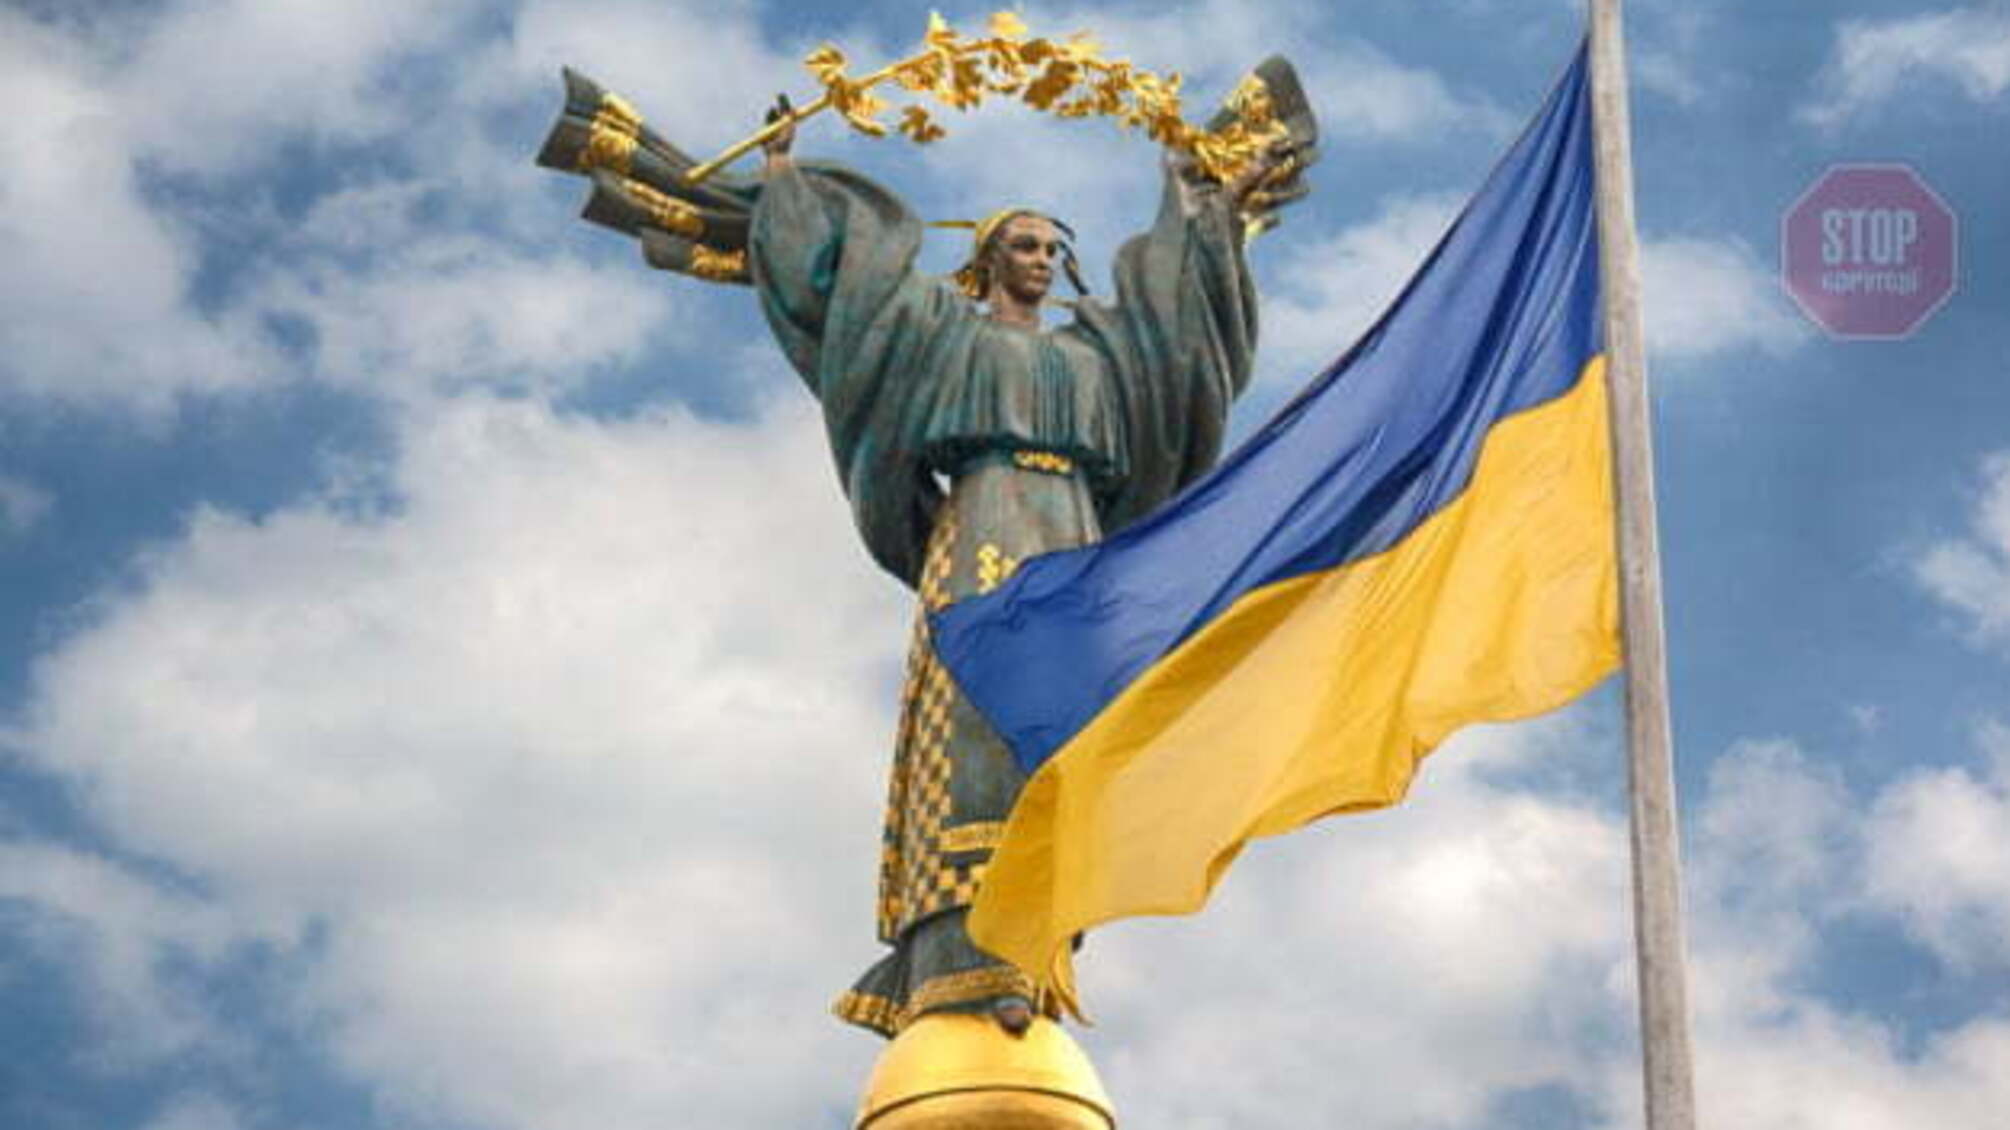 ООН: Населення України скоротиться до 35 мільйонів до 2050 року 